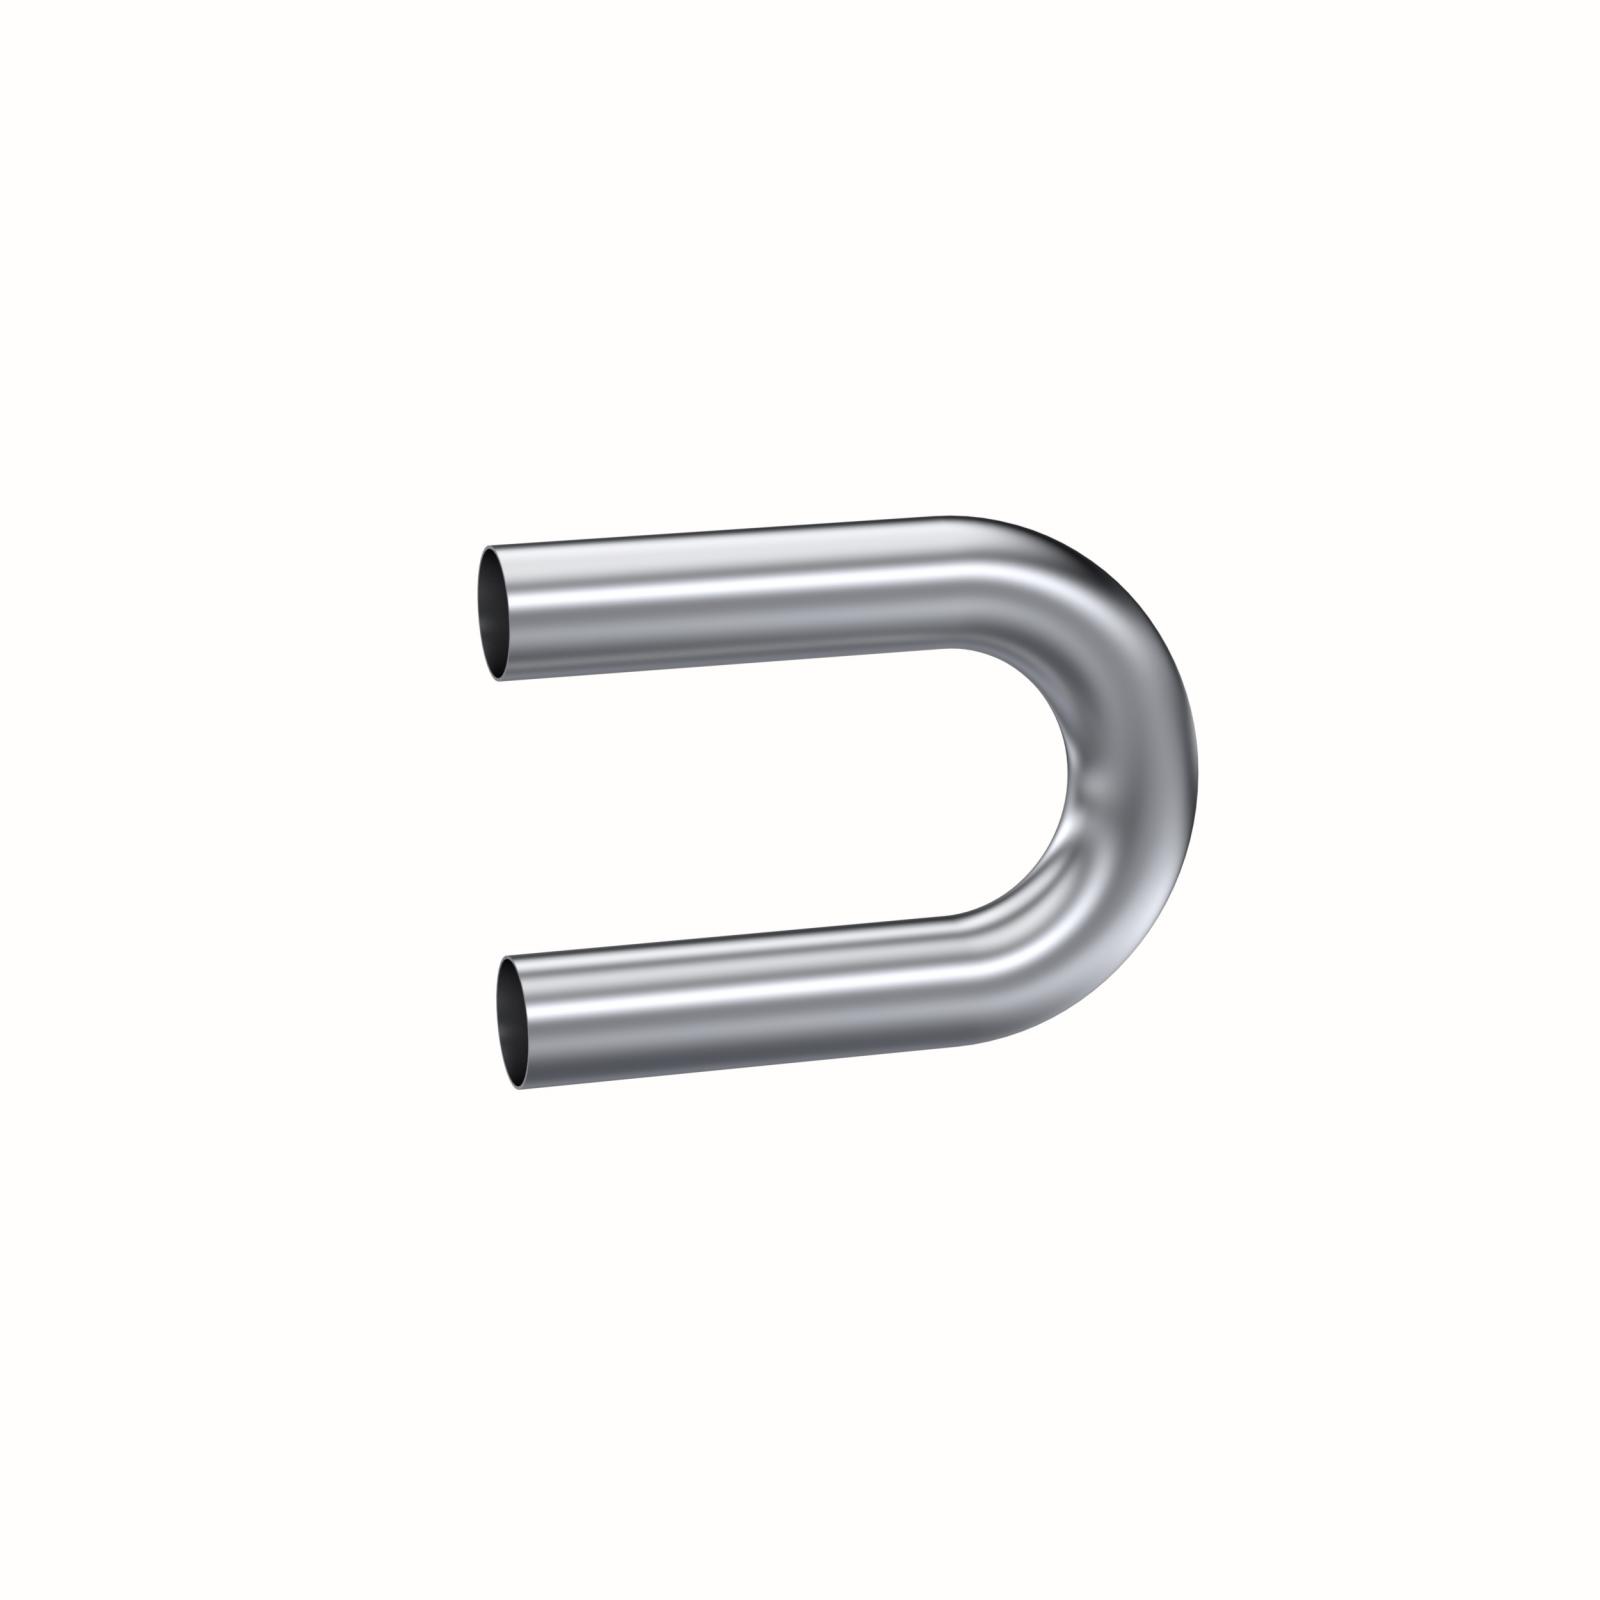 Exhaust Pipe 2.5 in 180 Degree Bend 9 in Legs Aluminized Steel MBRP